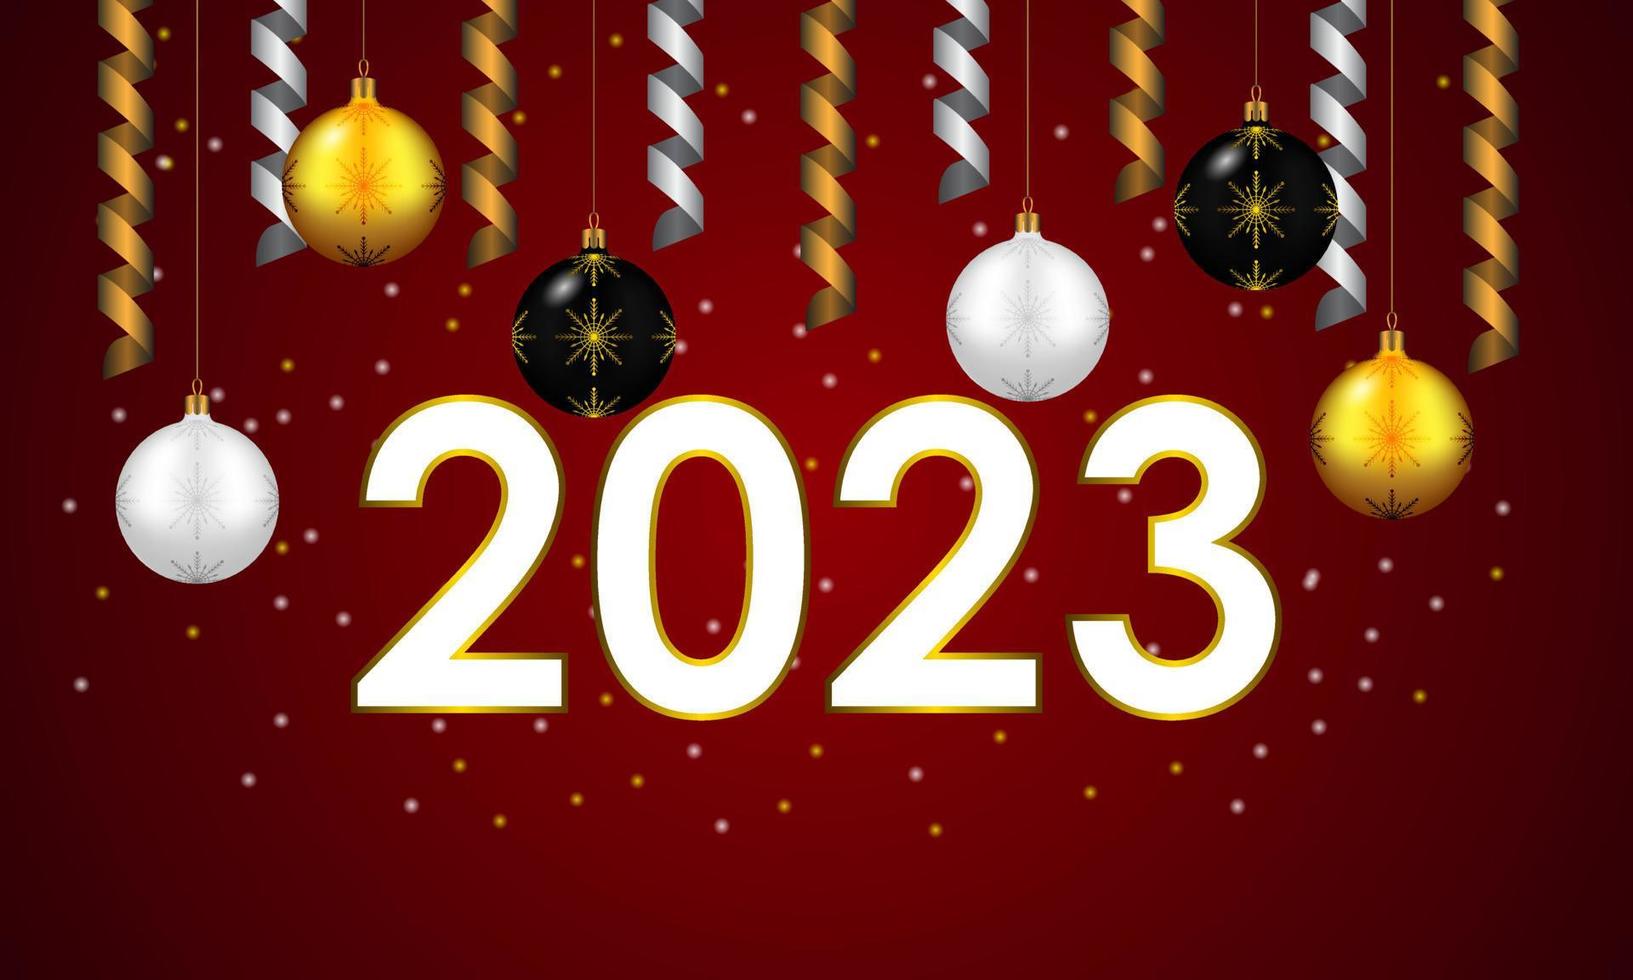 gott nytt år 2023. festlig design med juldekorationer, bollar och streamer vektor